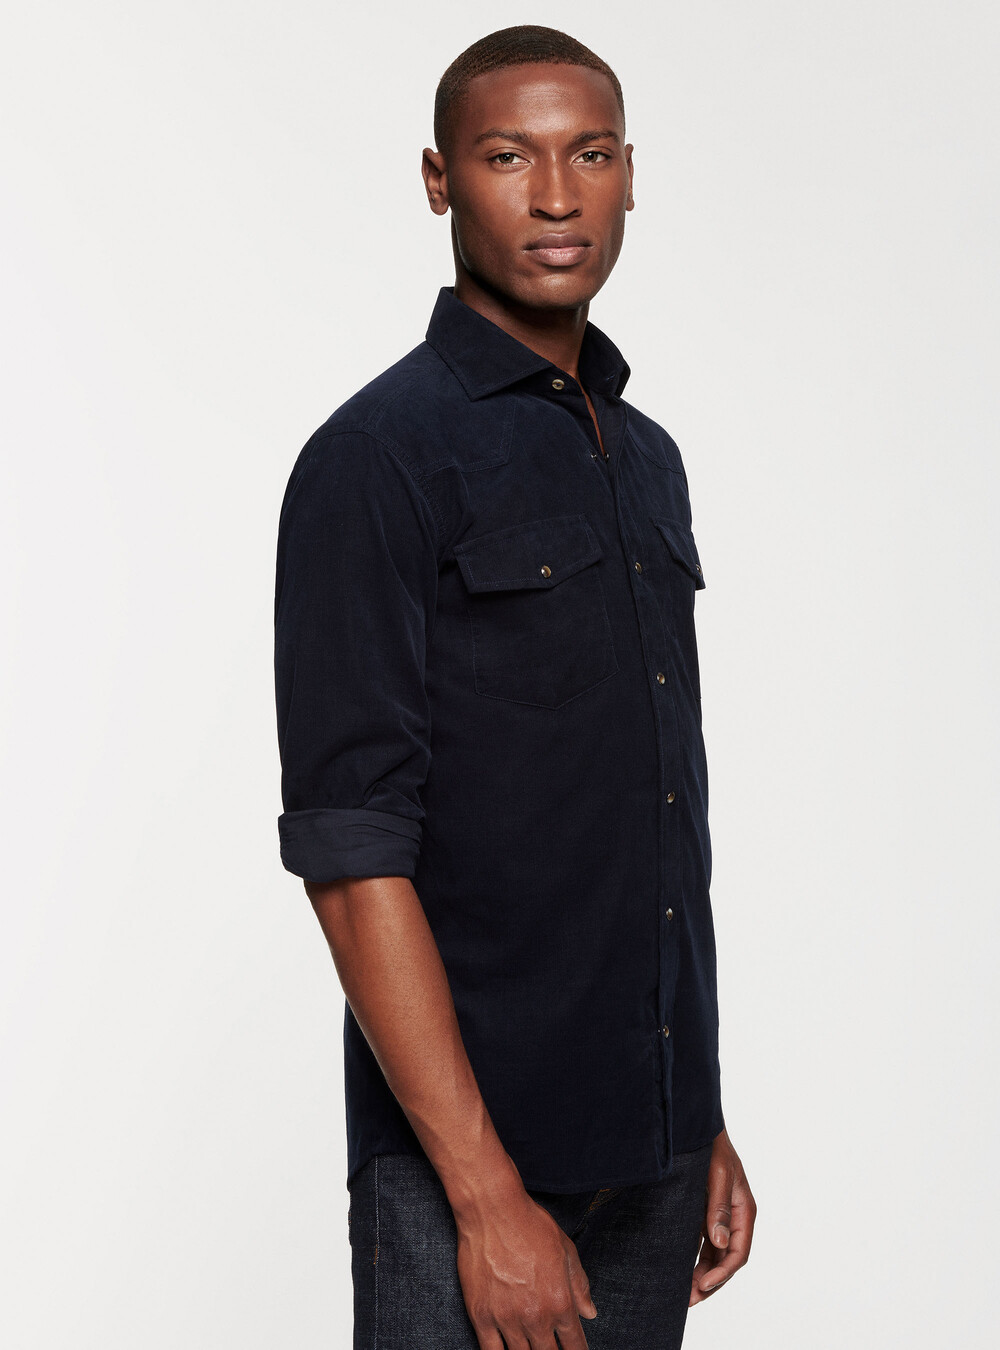 Velvet shirt with pockets | GutteridgeEU | Men's catalog-gutteridge ...